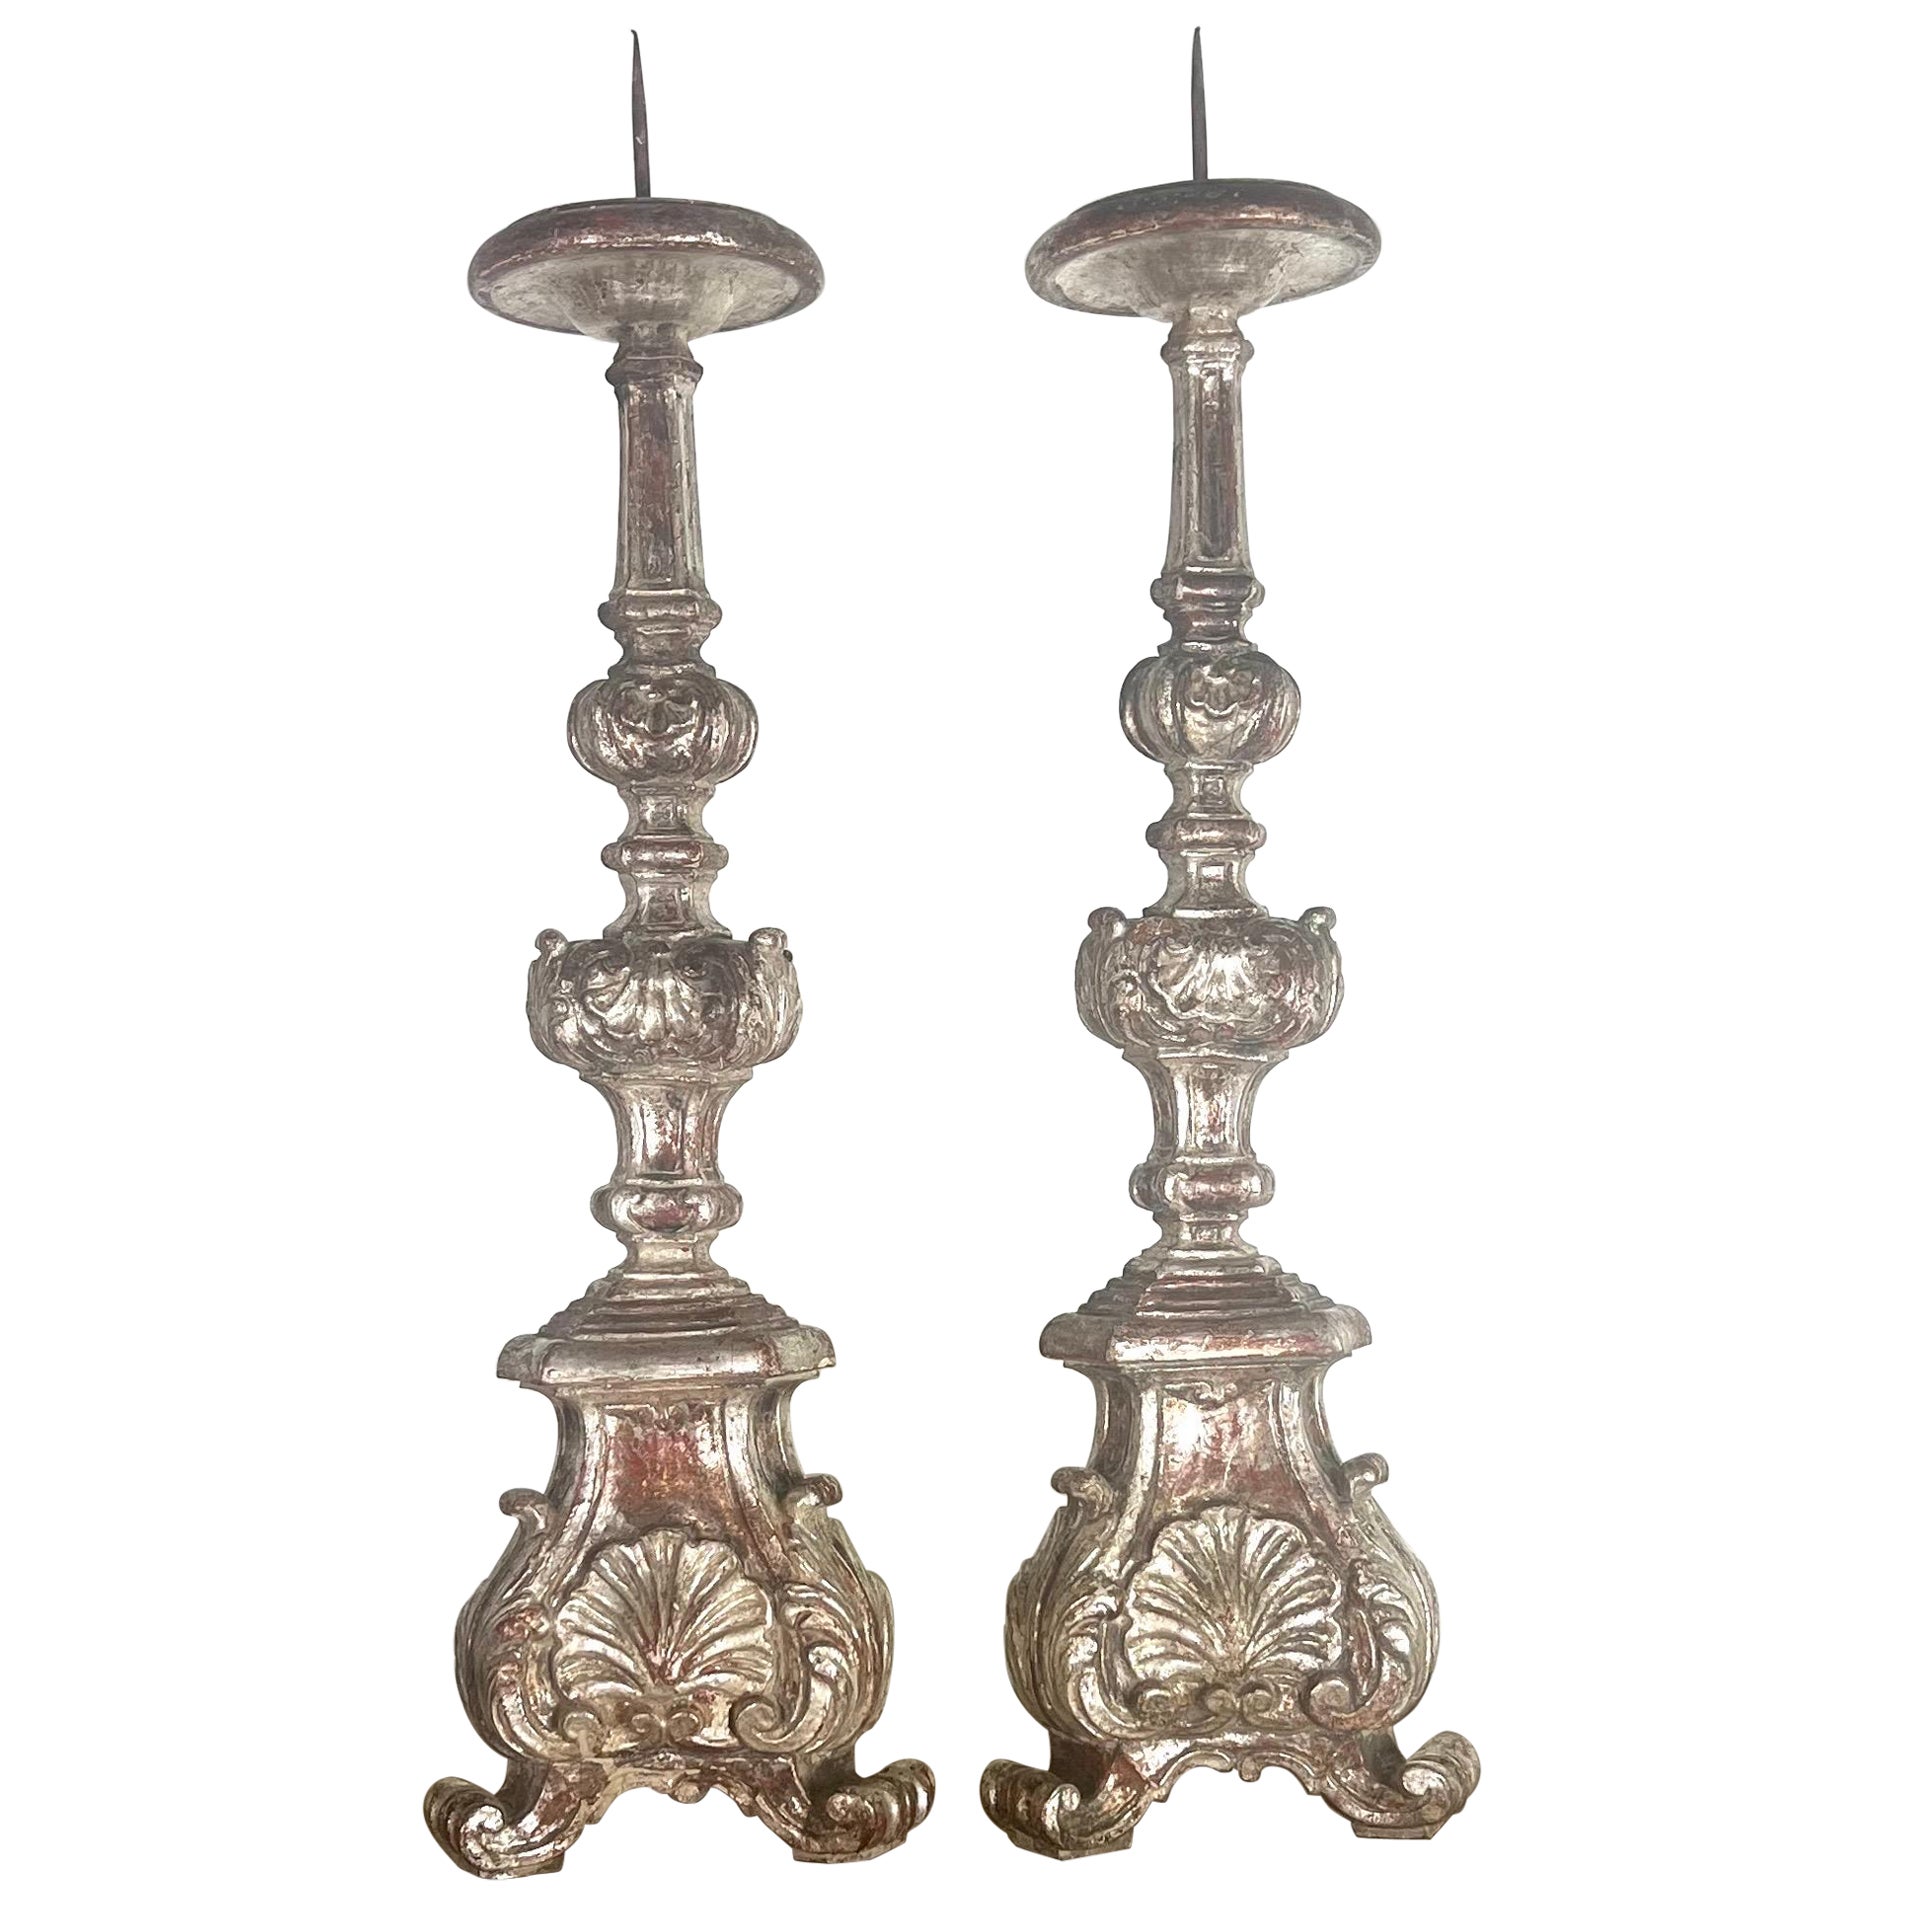 Paire de chandeliers italiens du 19ème siècle en argent doré